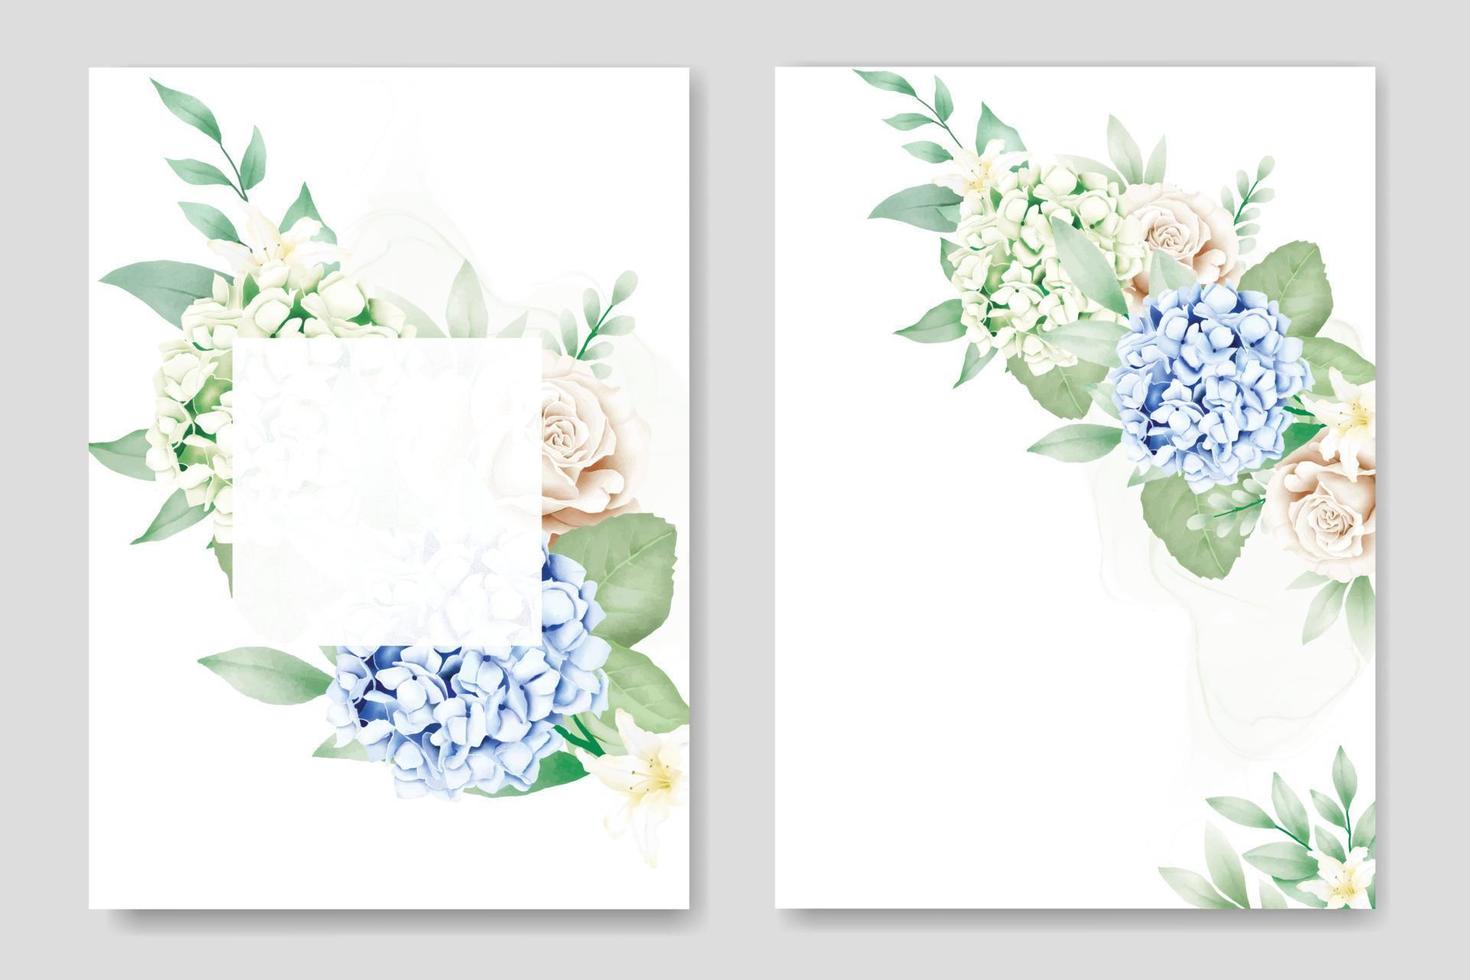 tarjeta de invitación de boda floral hermosa hortensia vector